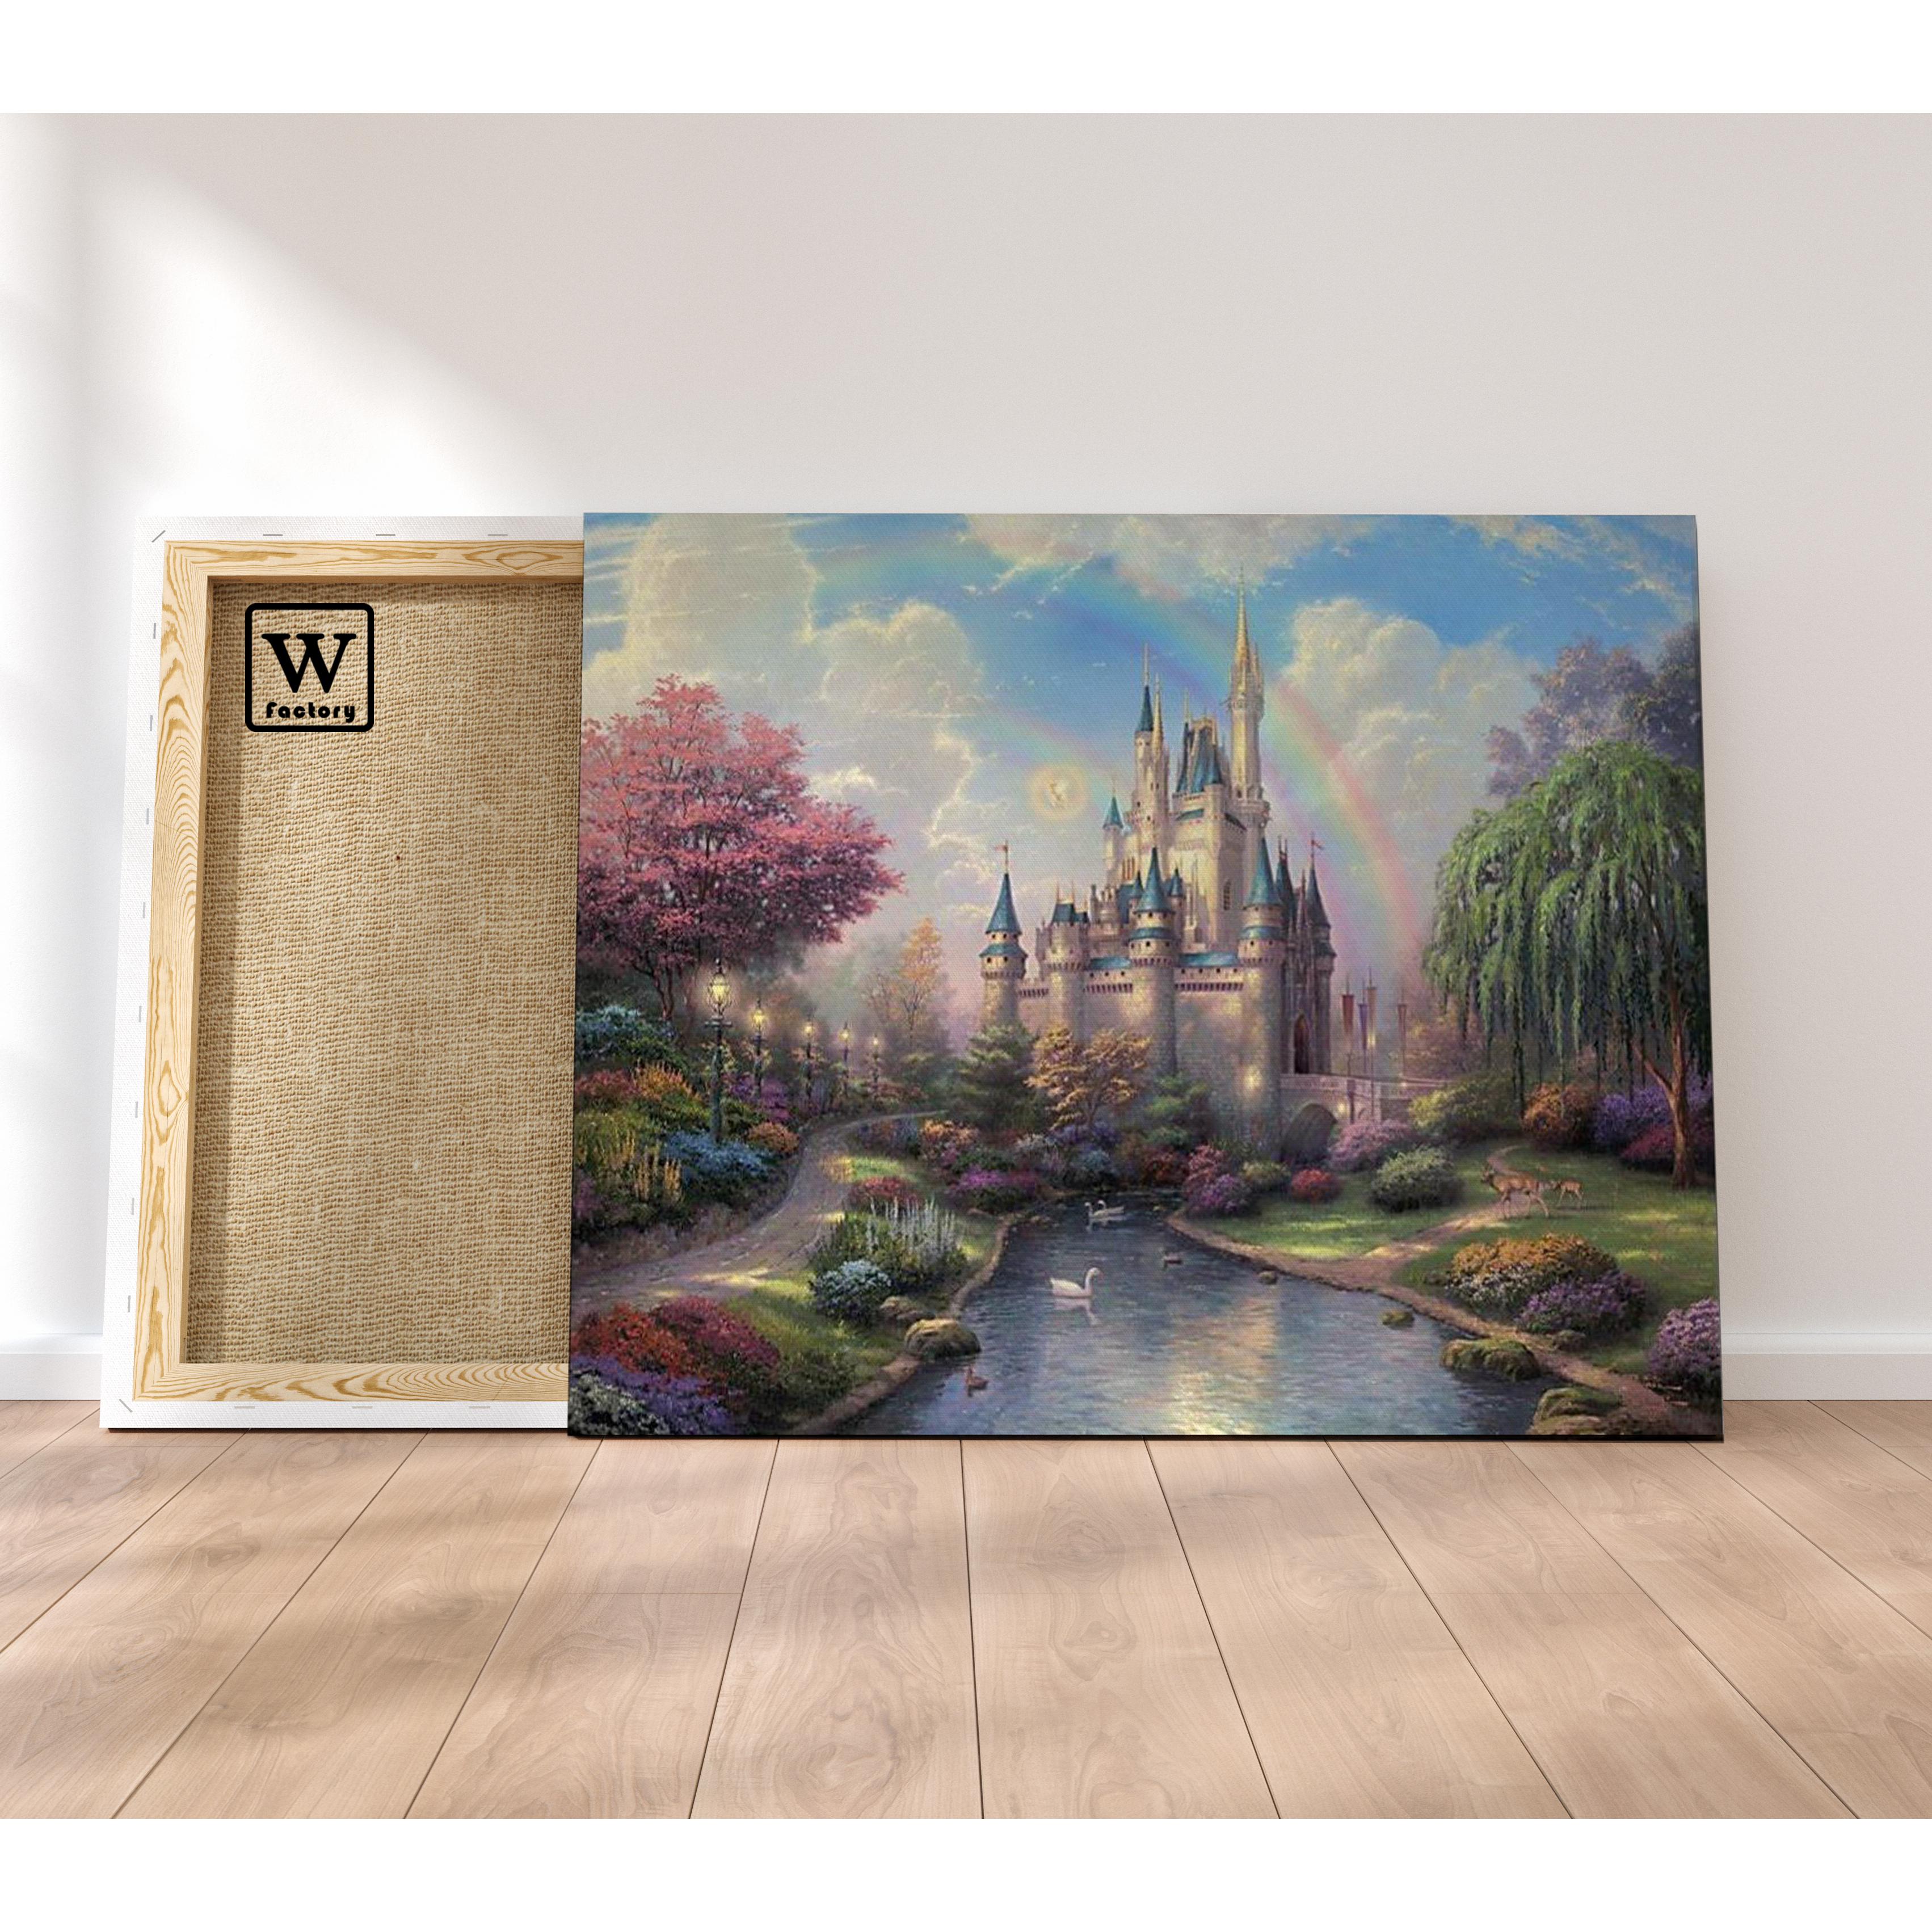 Peinture par numéro - Château Disney – Wall Factory